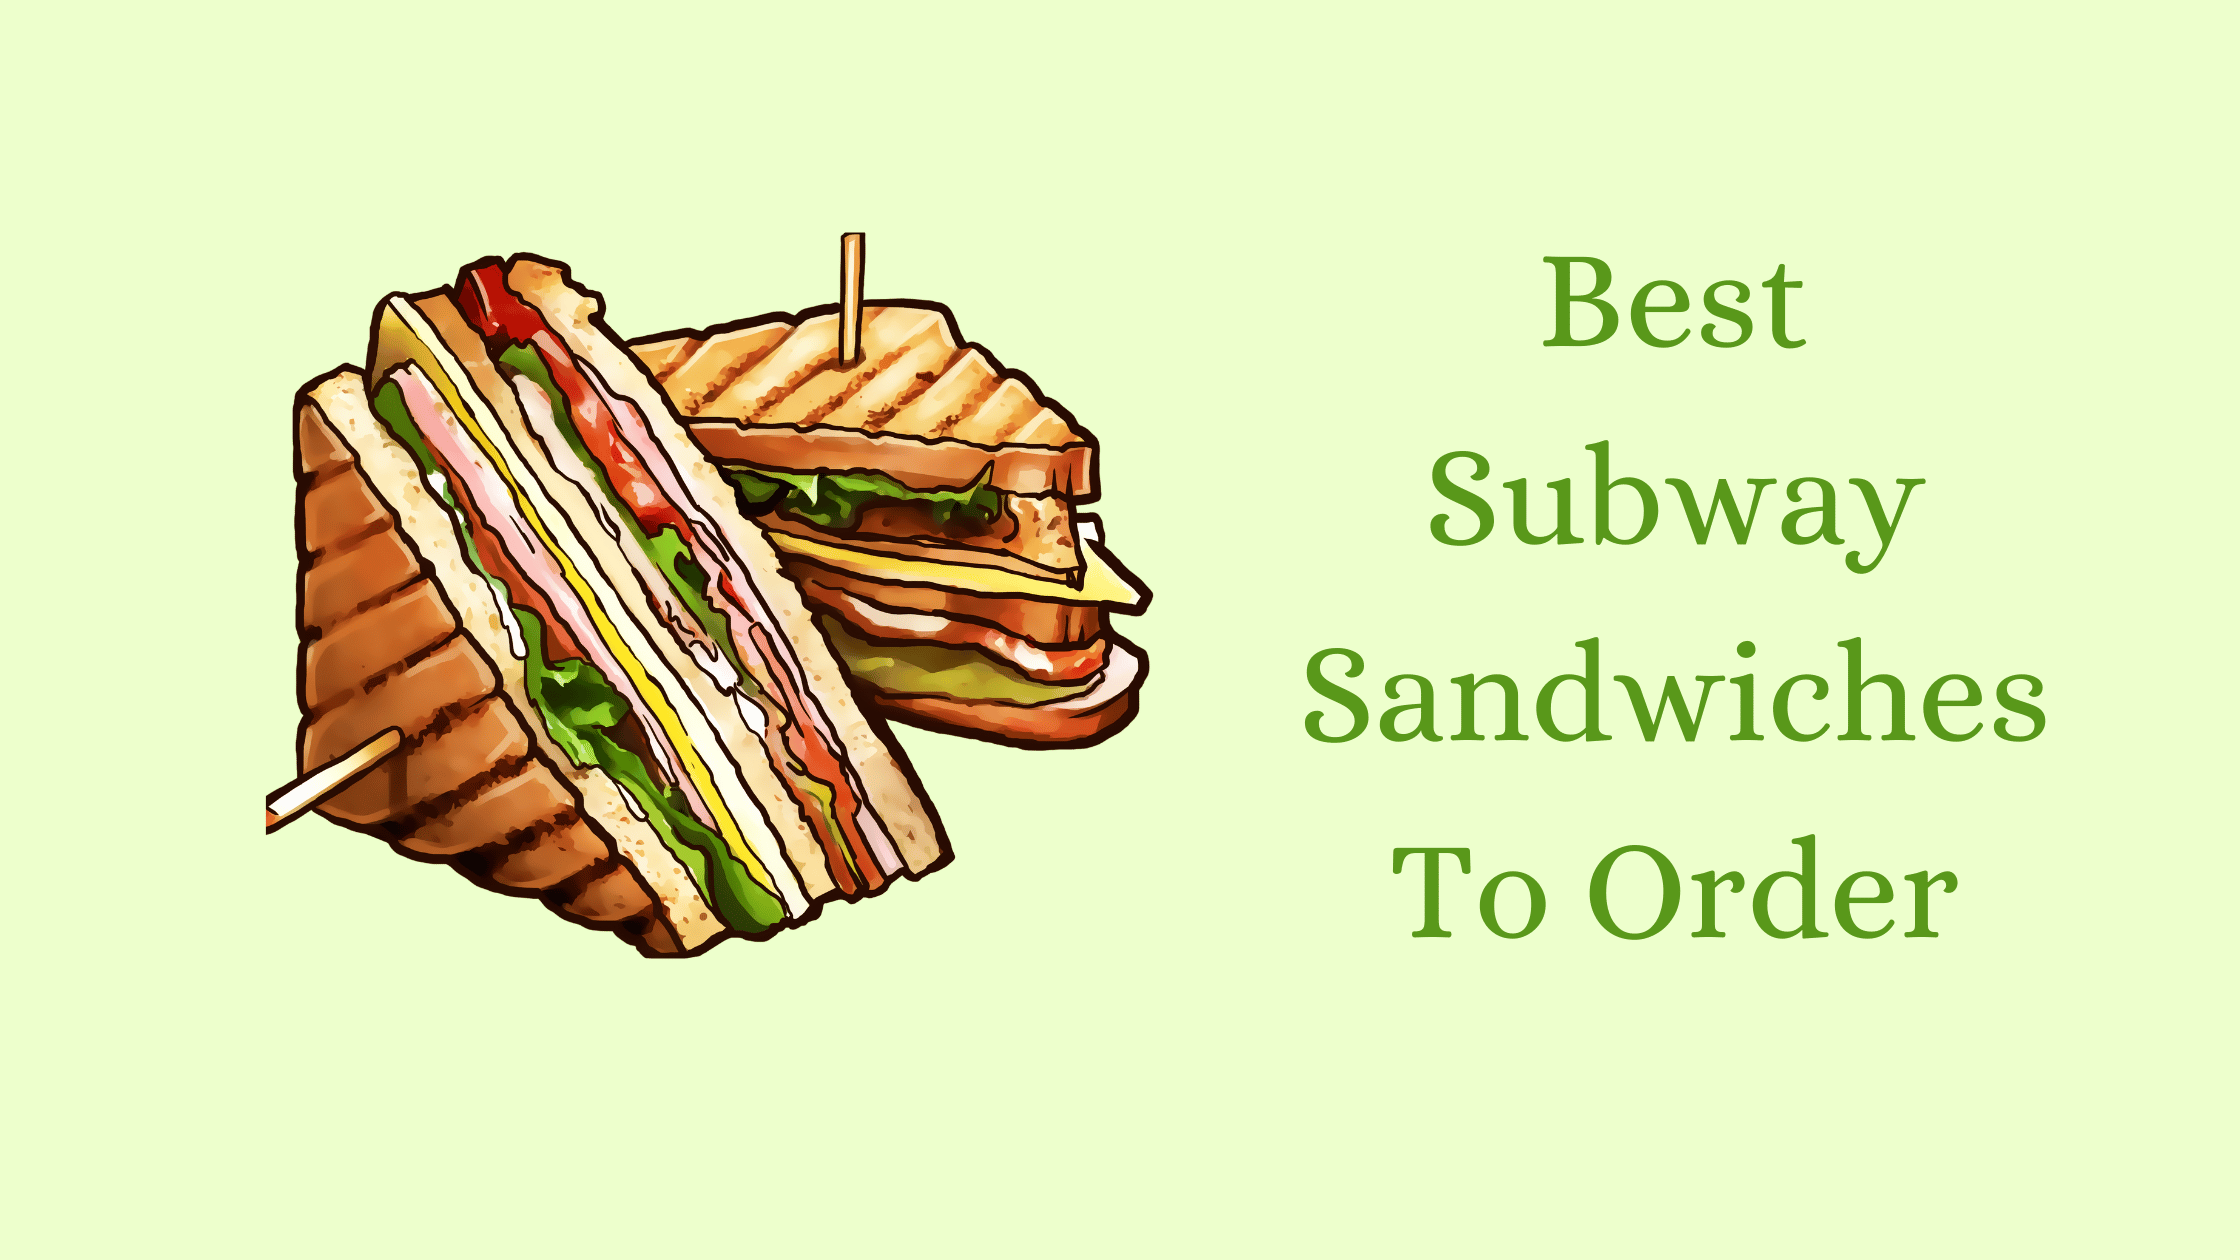 Best Subway Sandwiches To Order